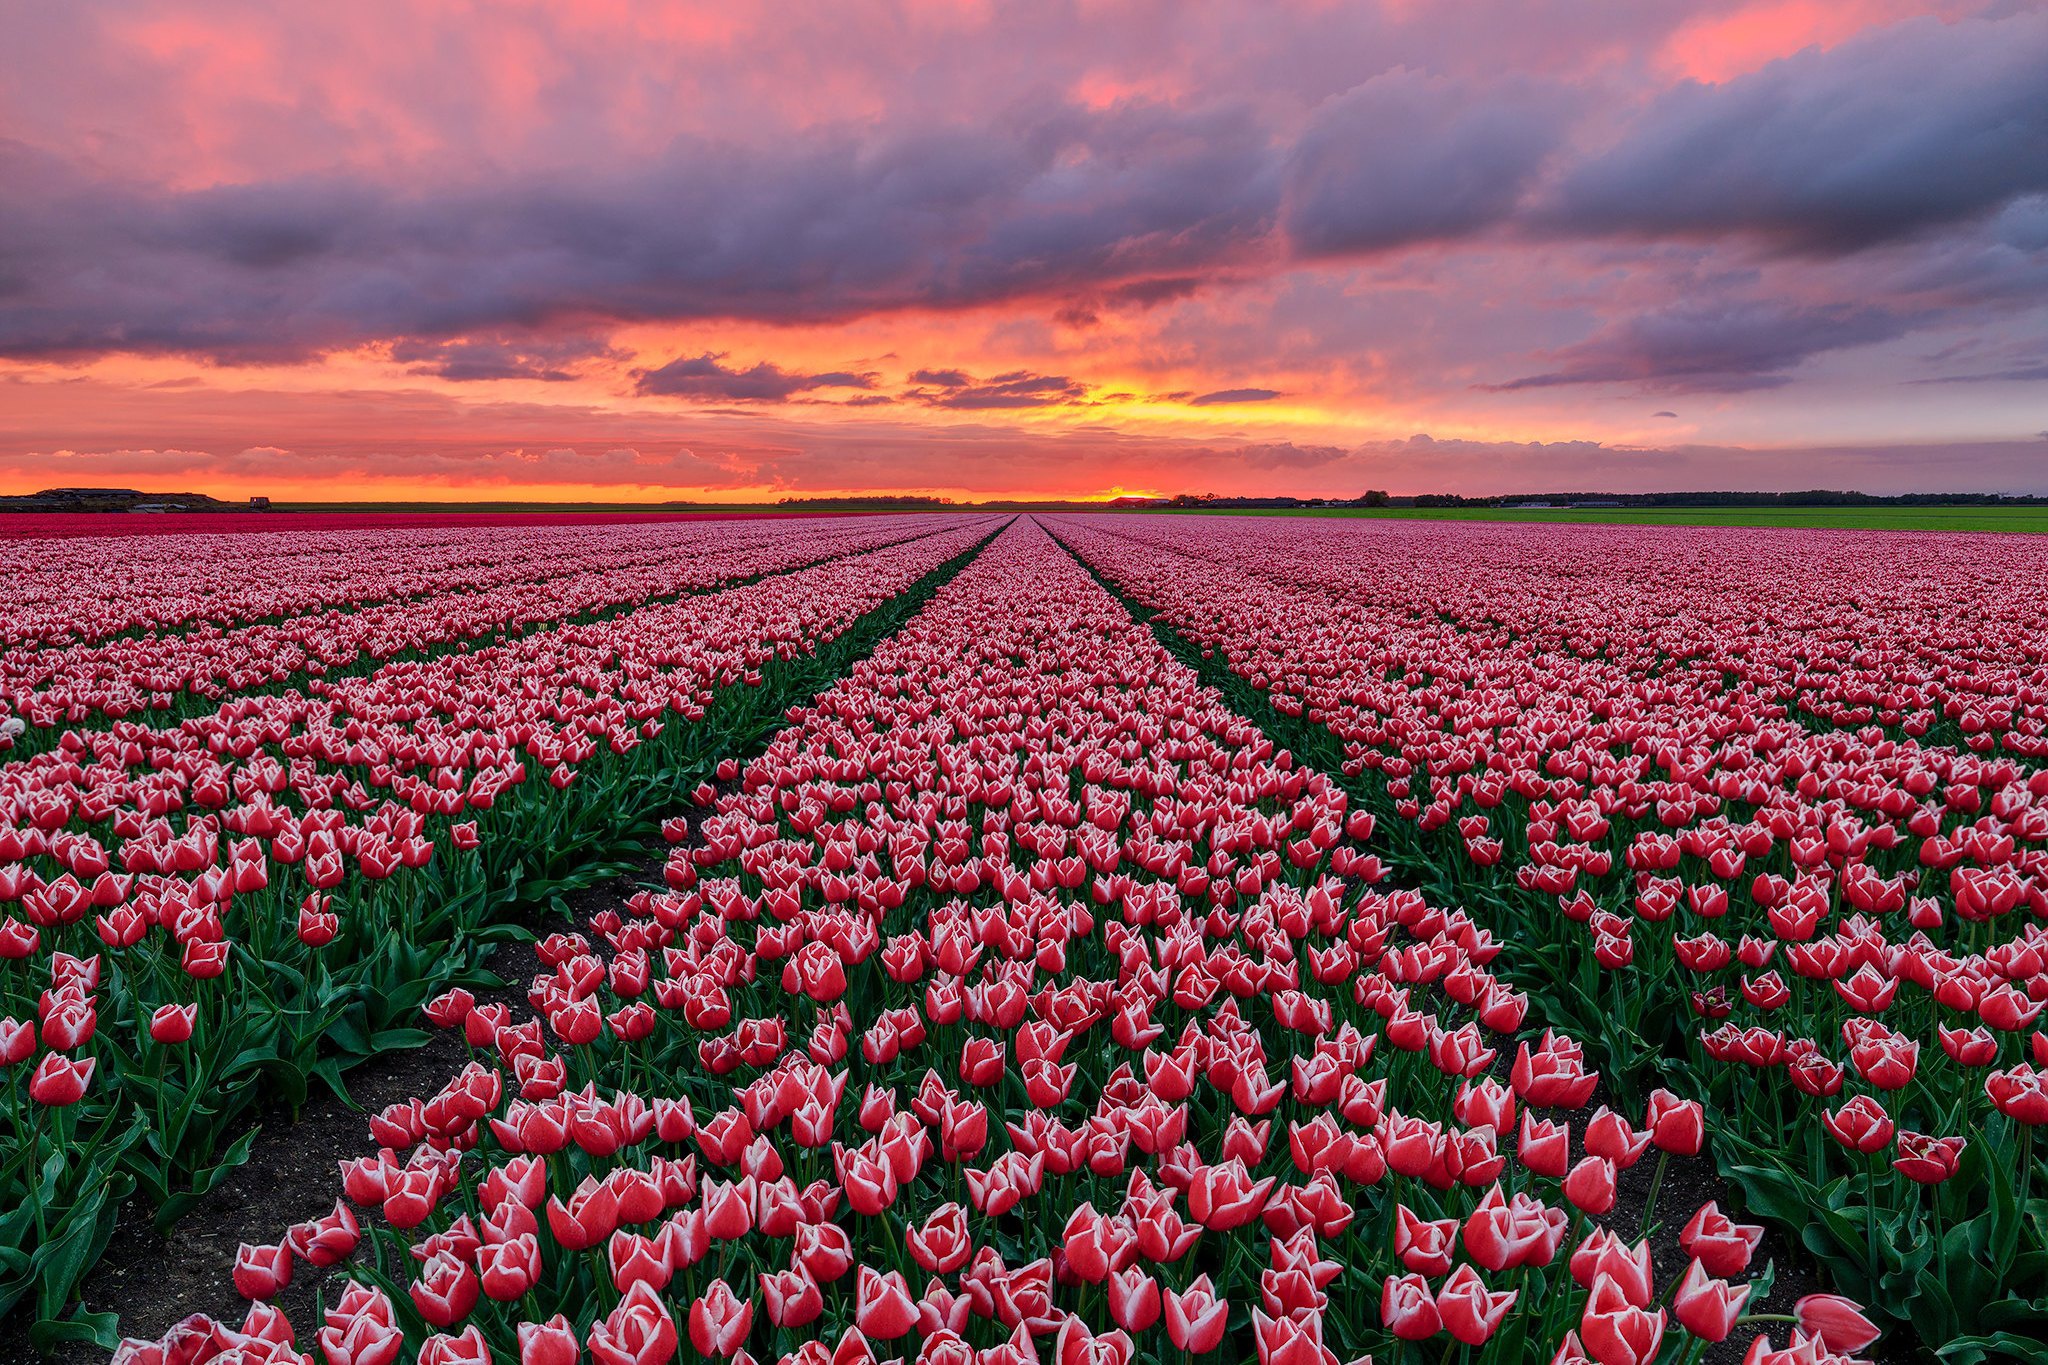 Поля тюльпанов в нидерландах фото